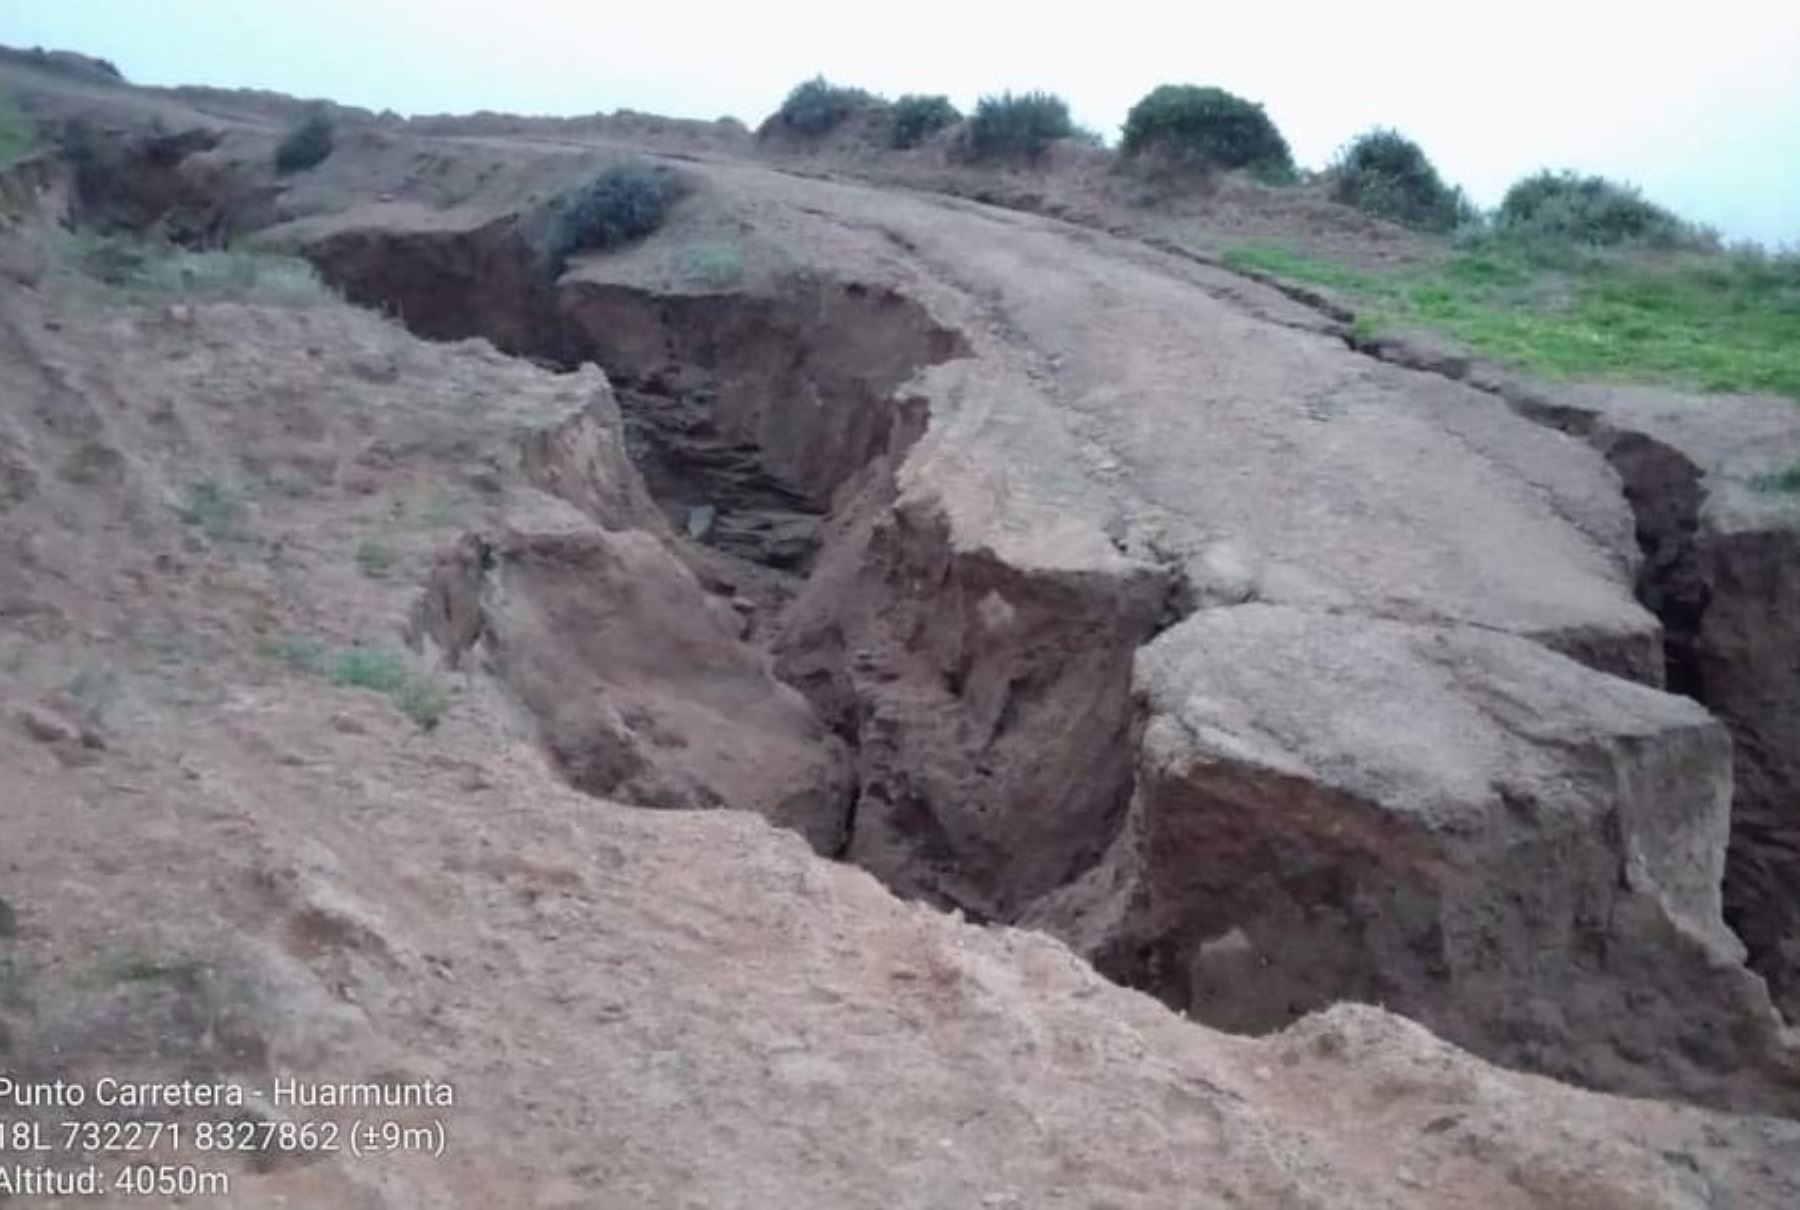 Daños en vías y caminos de herradura por lluvias intensas en zonas altas de Arequipa